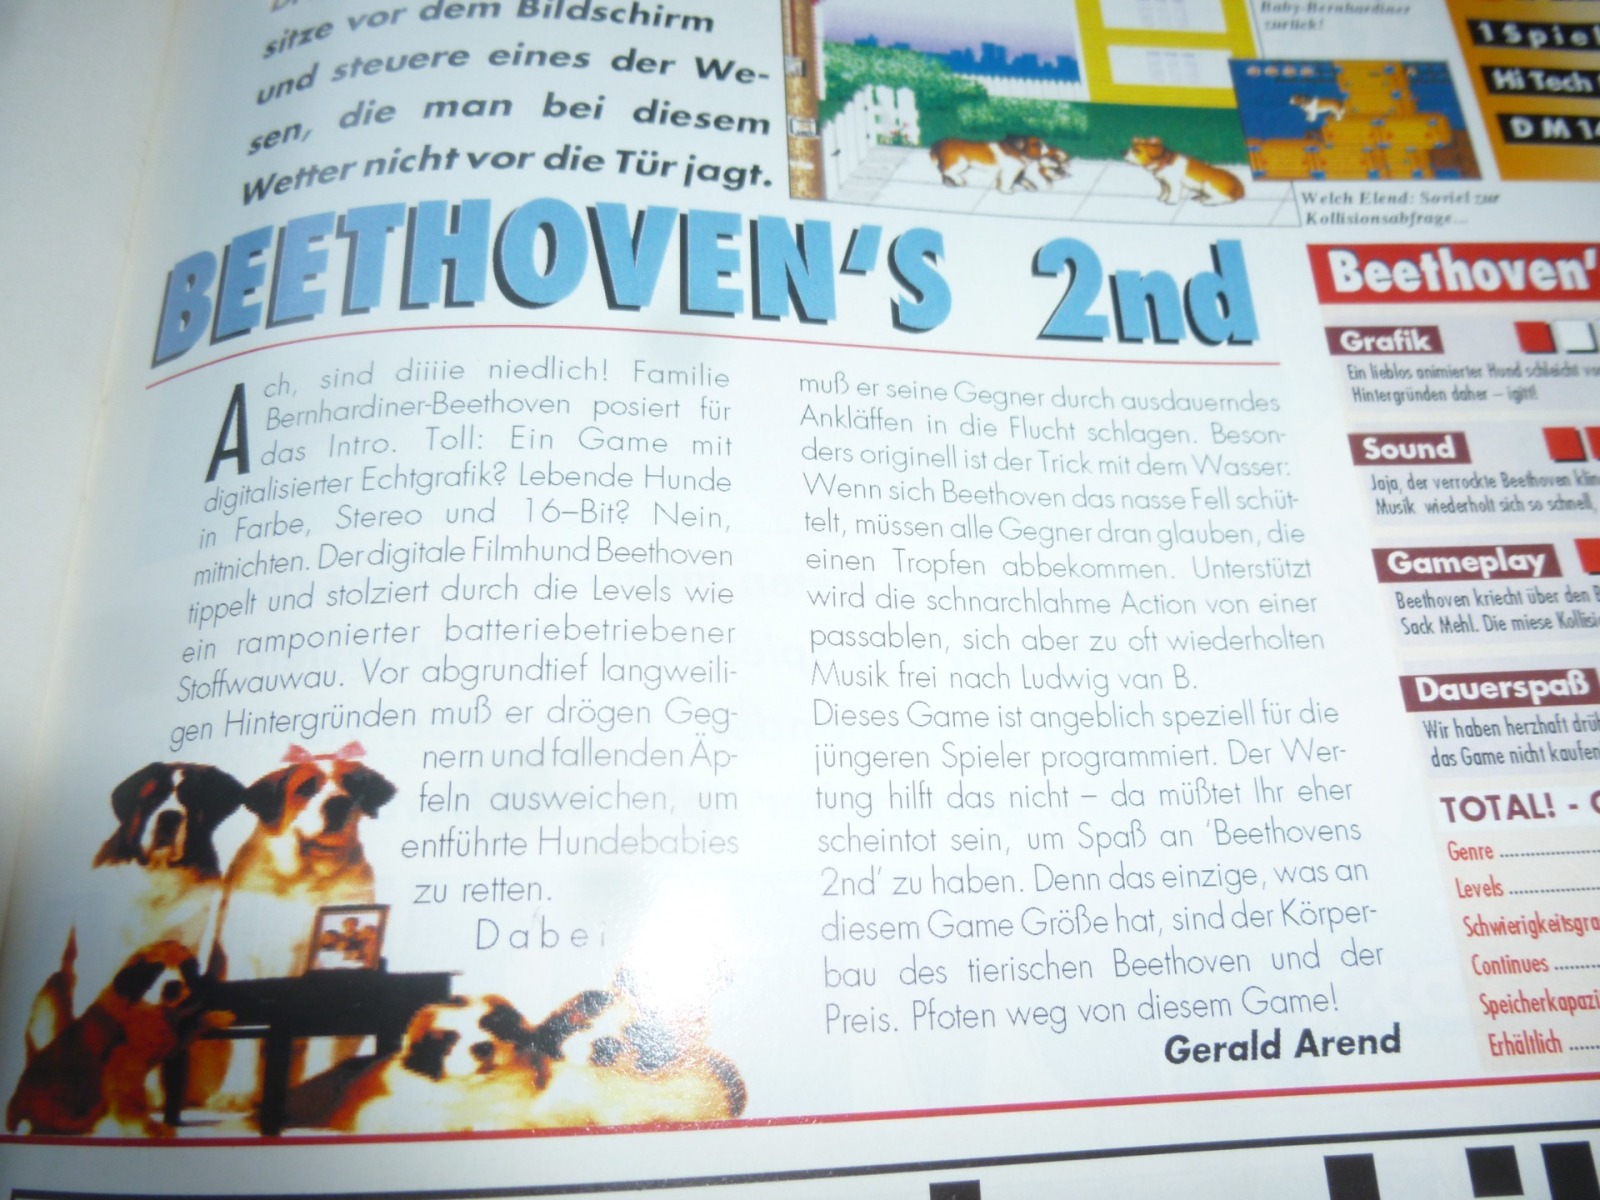 TOTAL Das unabhängige Magazin - 100 Nintendo - Ausgabe 12/93 1993 22